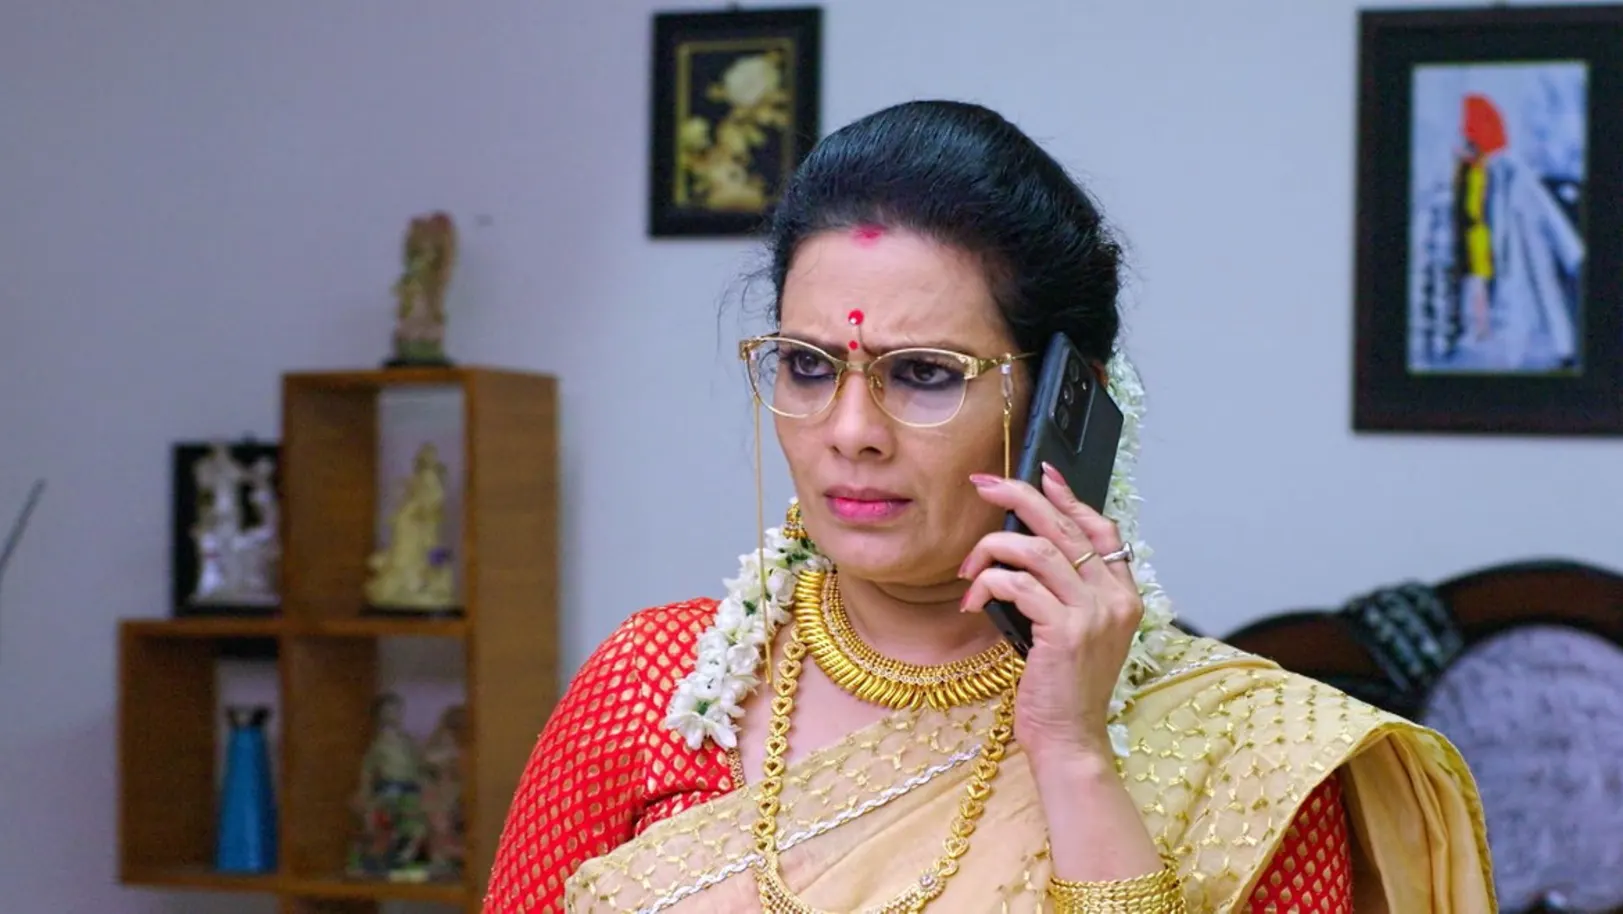 Oru Oorla Rendu Rajakumari - November 17, 2021 - Episode Spoiler